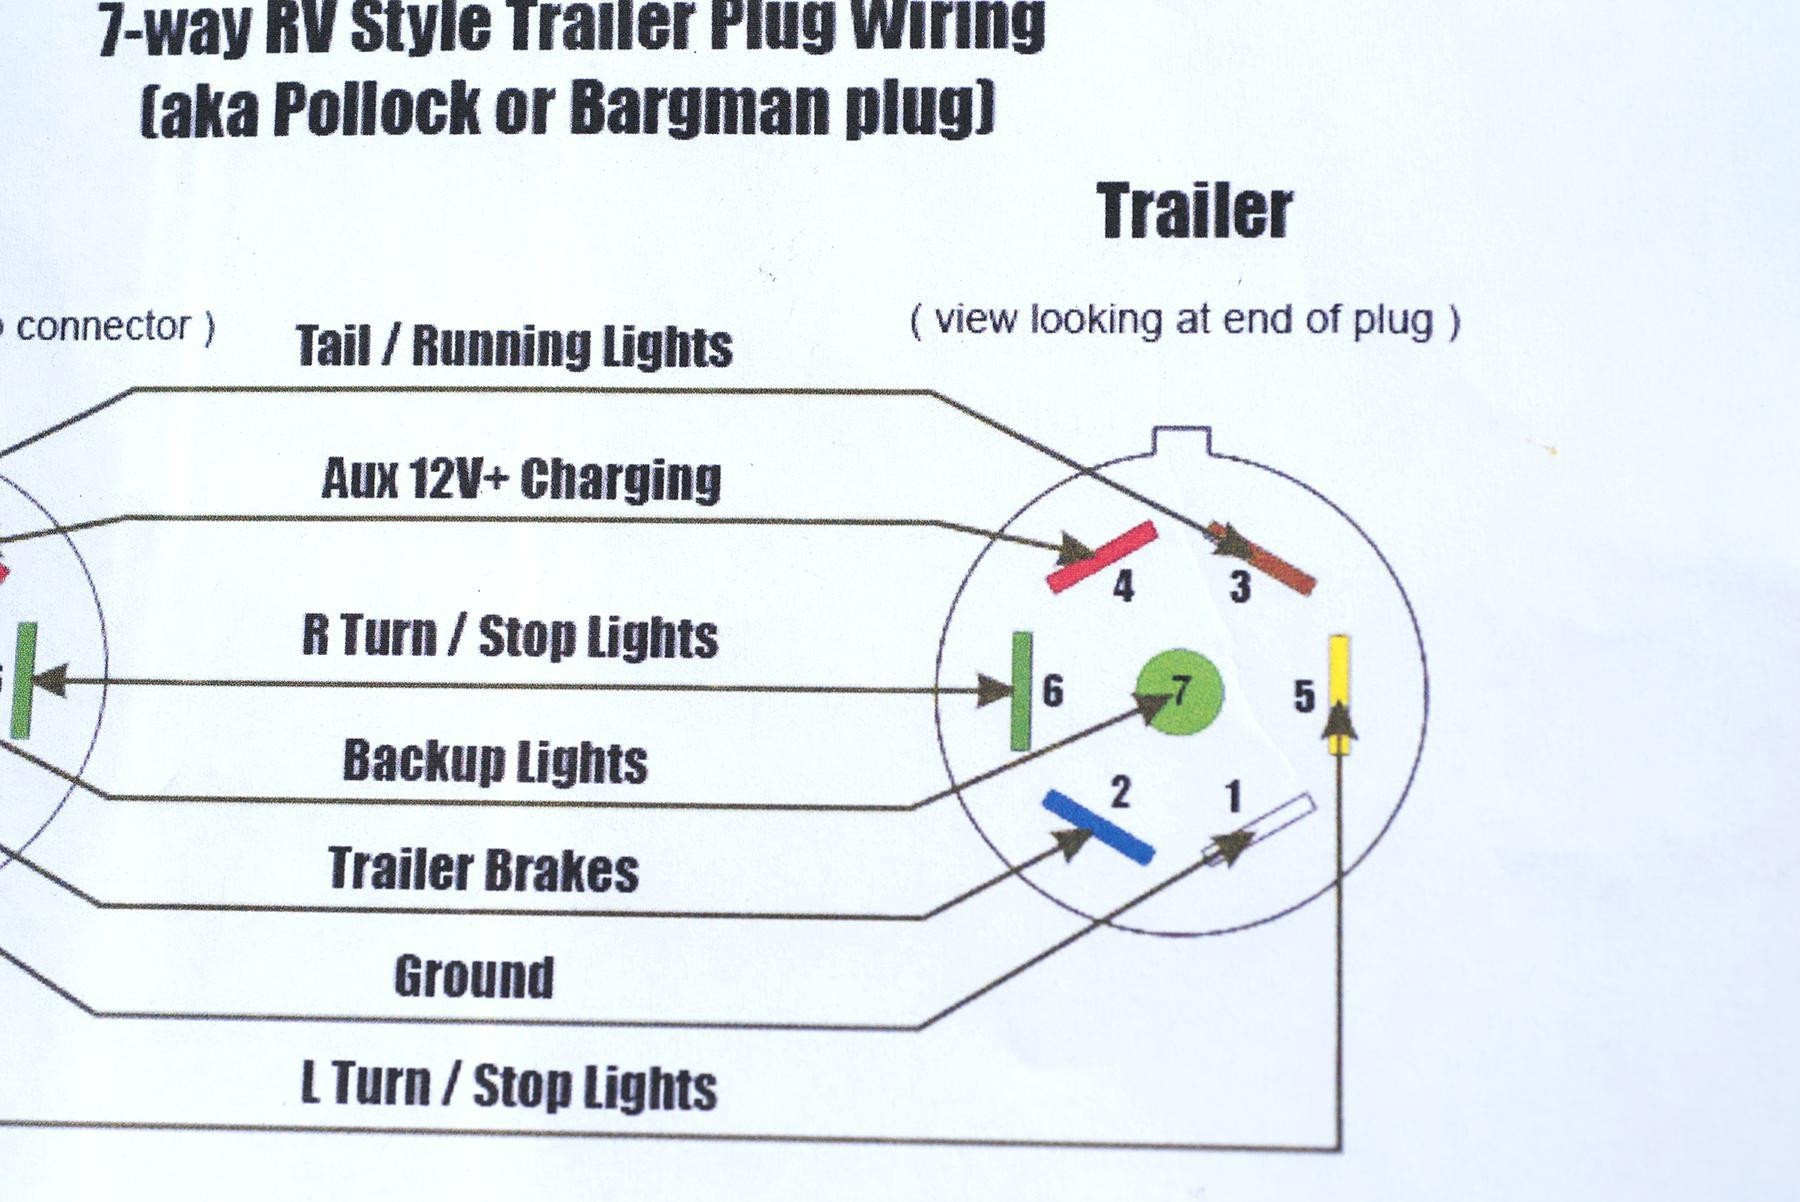 2015 Dodge Ram 7 Pin Trailer Wiring Diagram | Wiring Diagram - Dodge Trailer Wiring Diagram 7 Pin